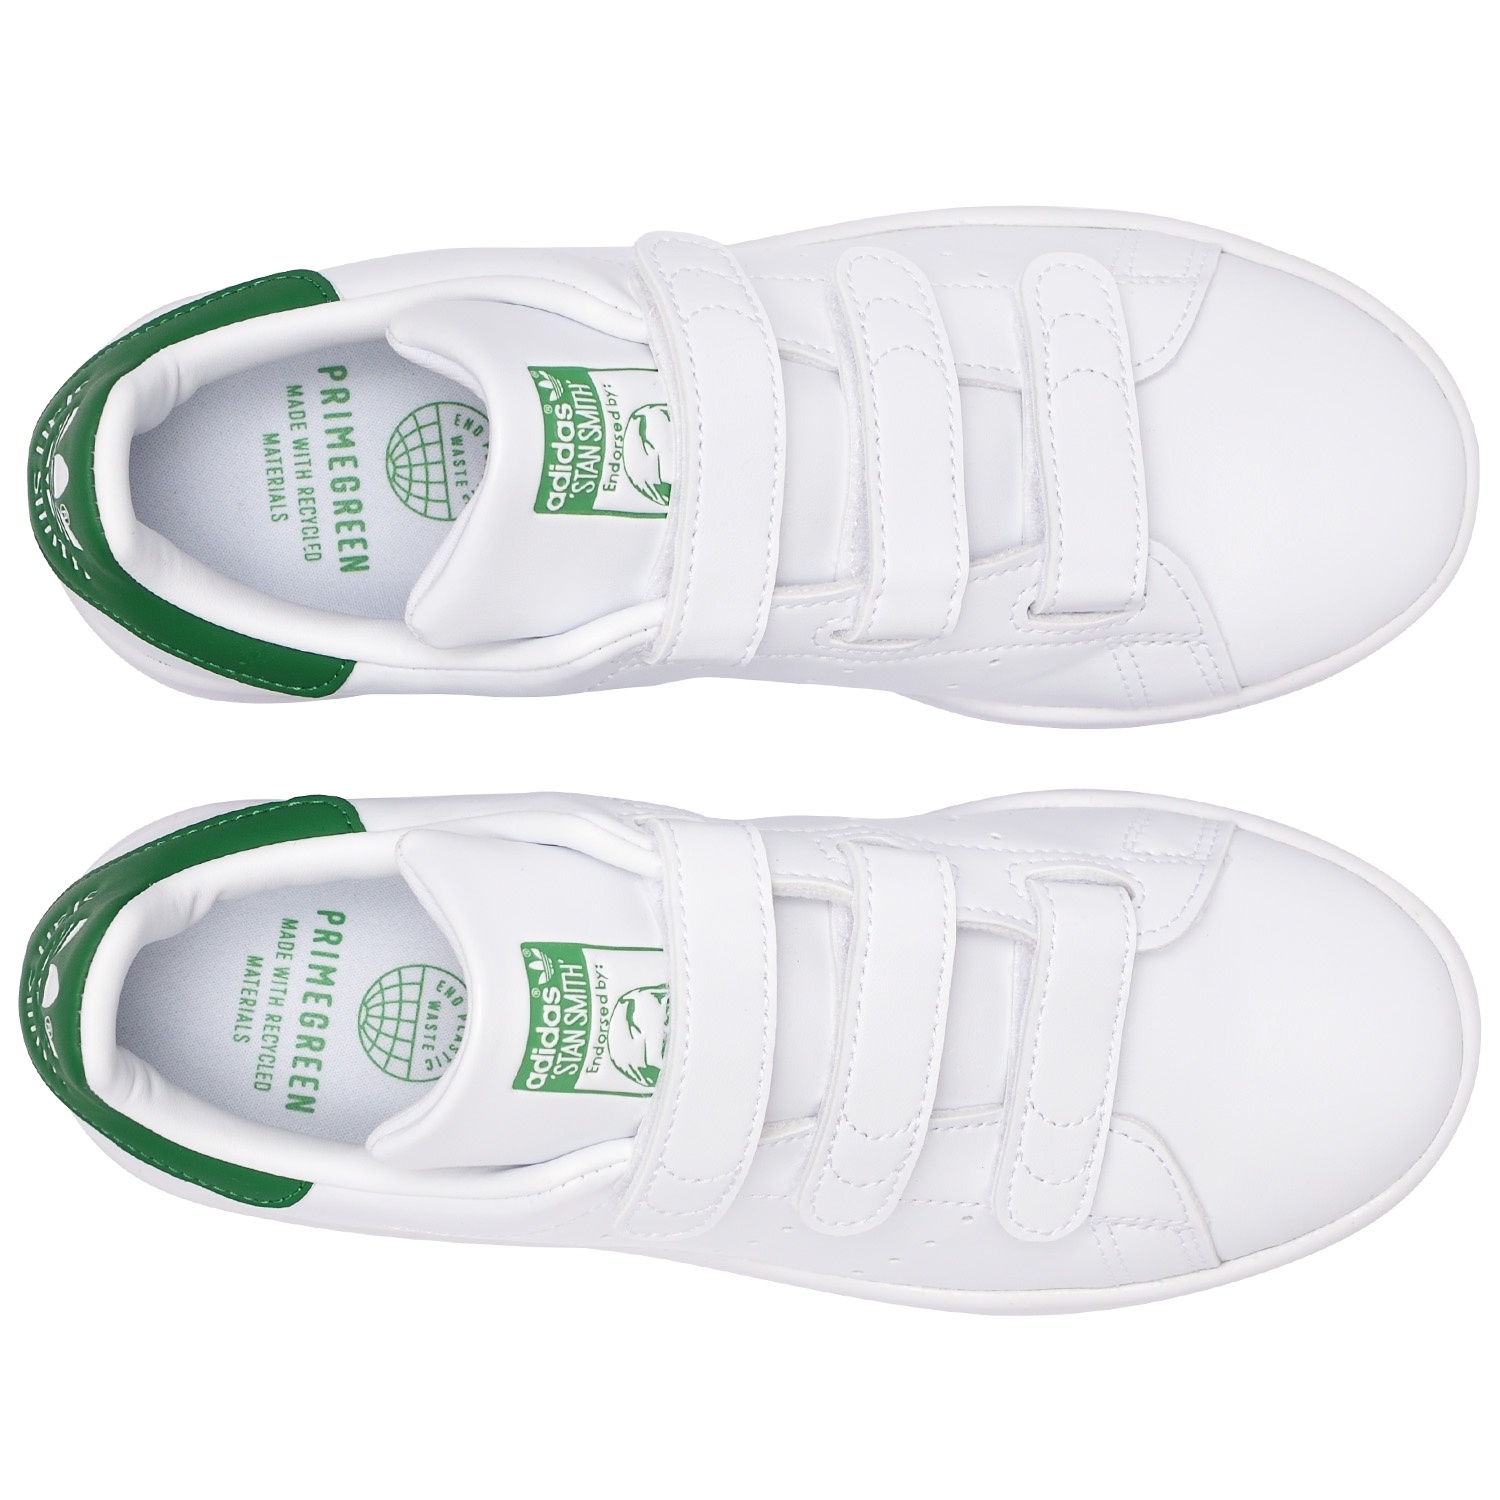 adidas Originals STAN SMITH. White и Cloud White истории / / магазин N9SS лимитированных релизов кроссовок, Cloud - - Green